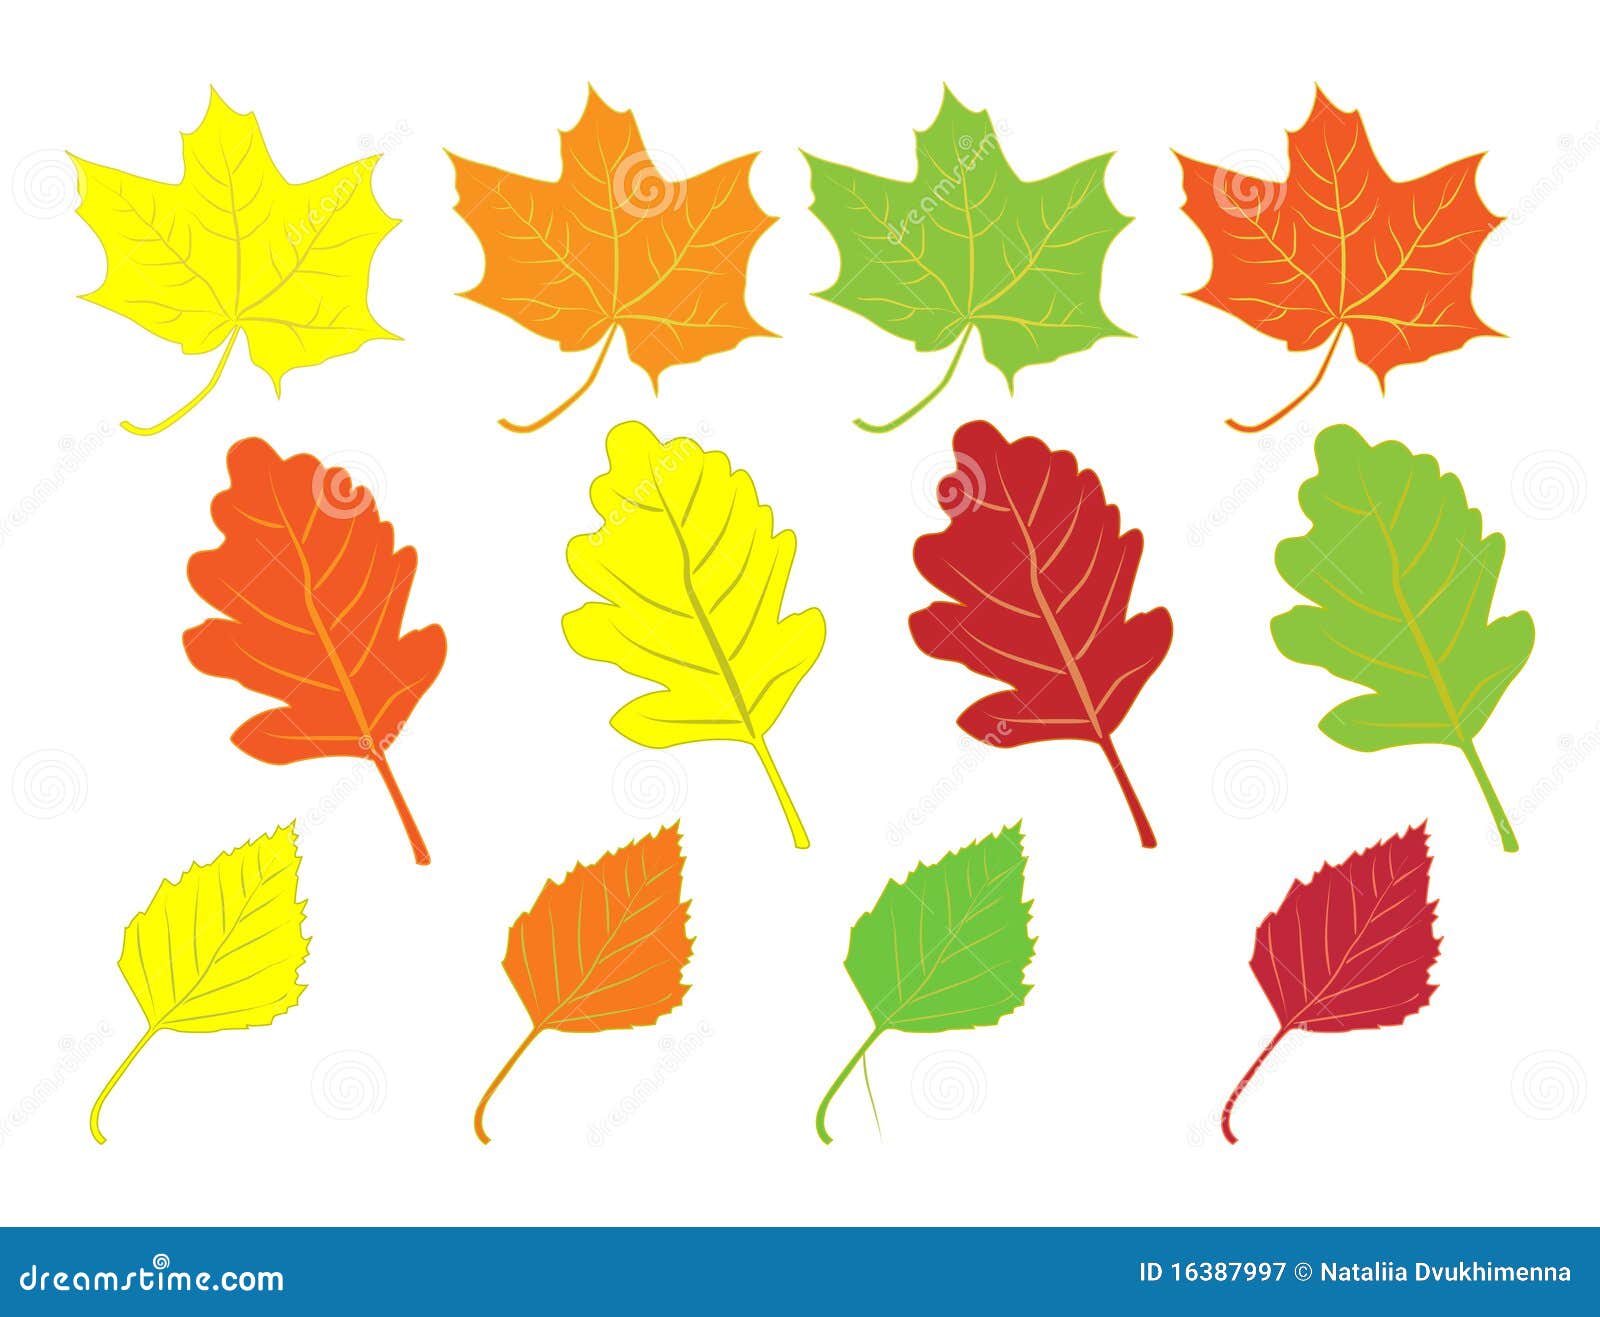 Листья разного цвета для детей